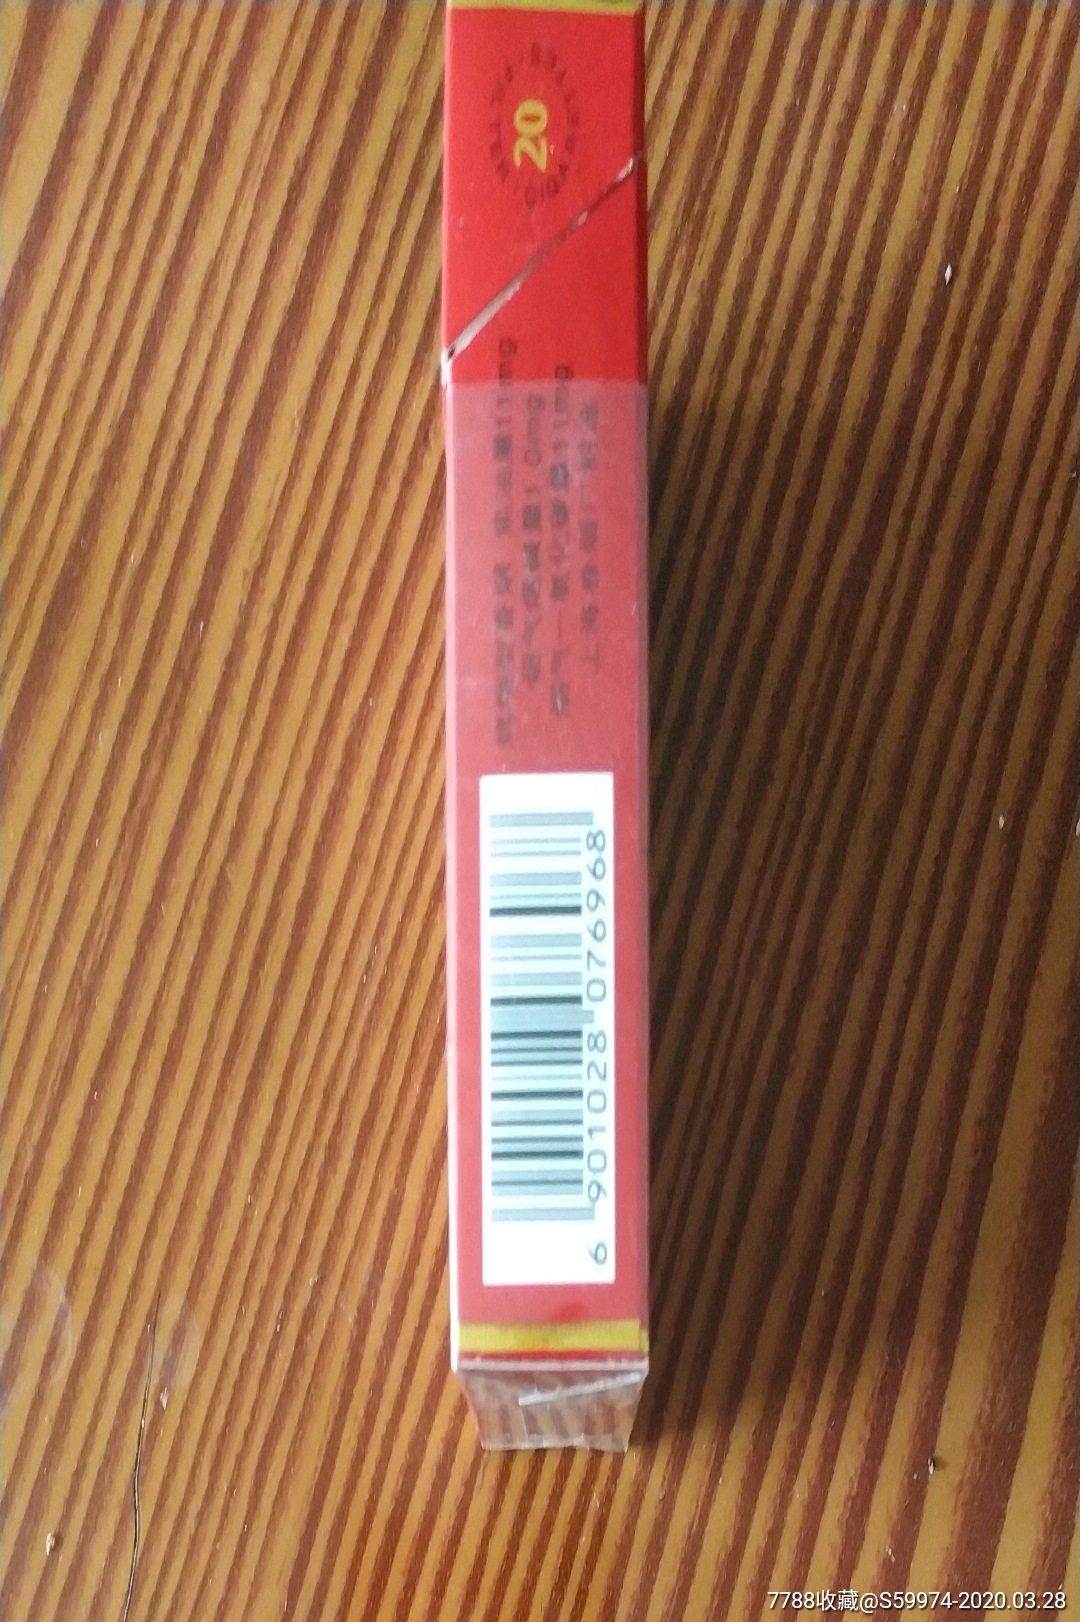 中华烟盒